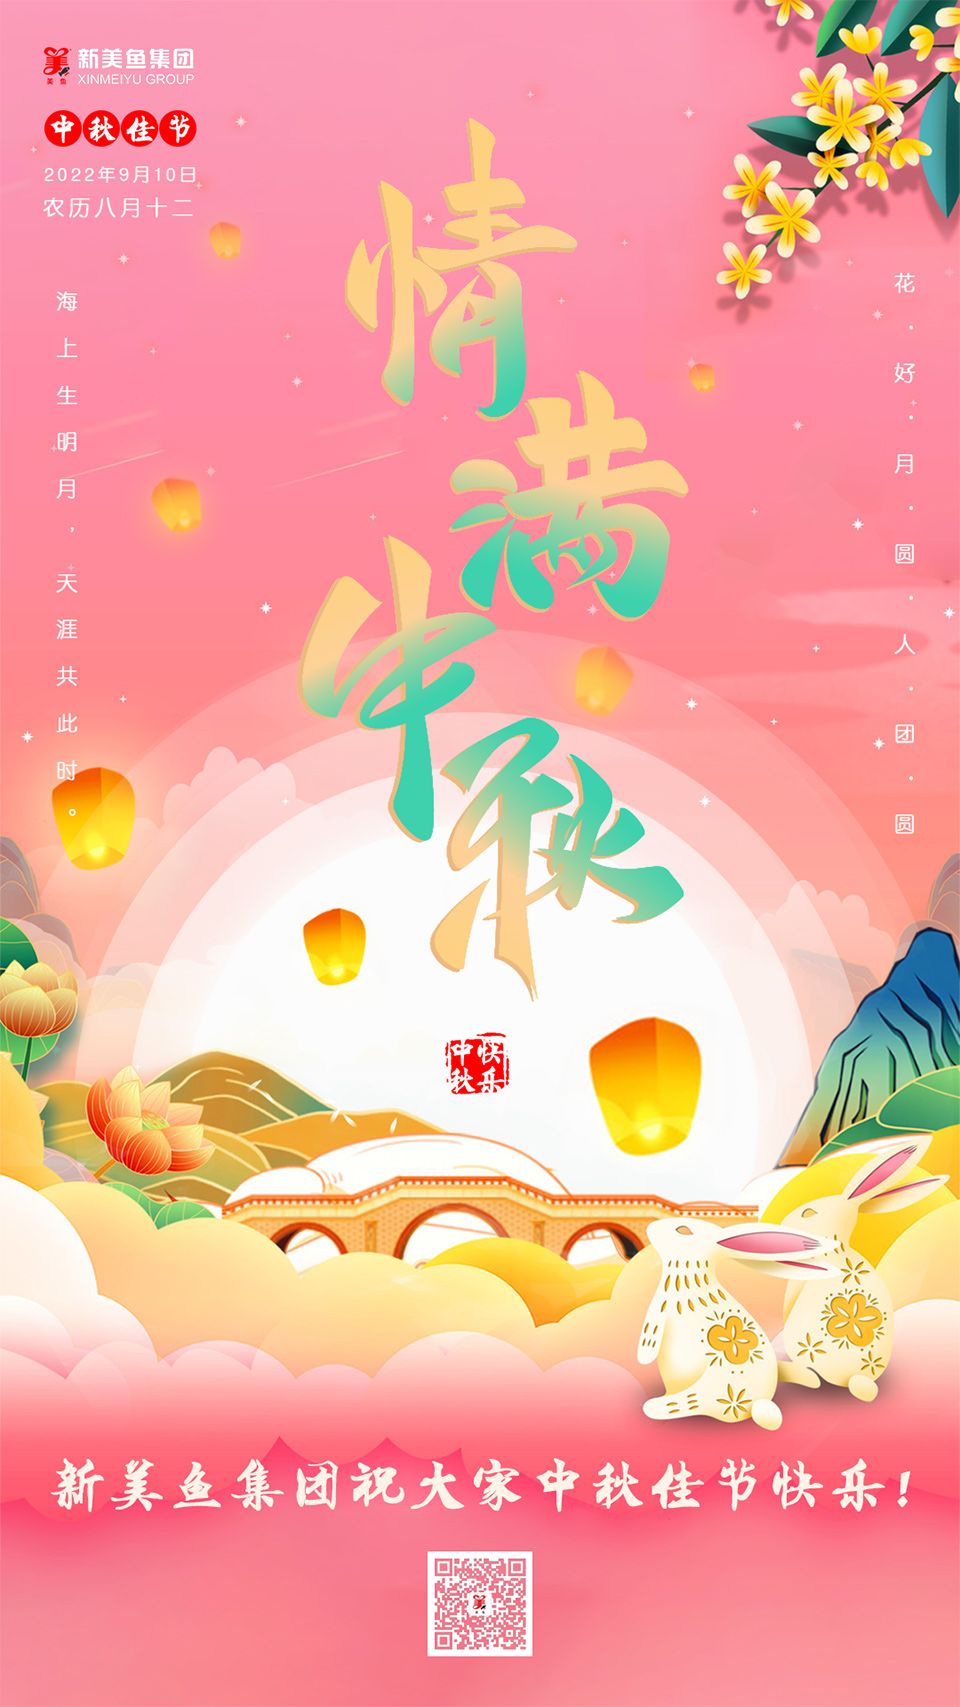 中秋节 | 新美鱼集团祝您节日快乐！